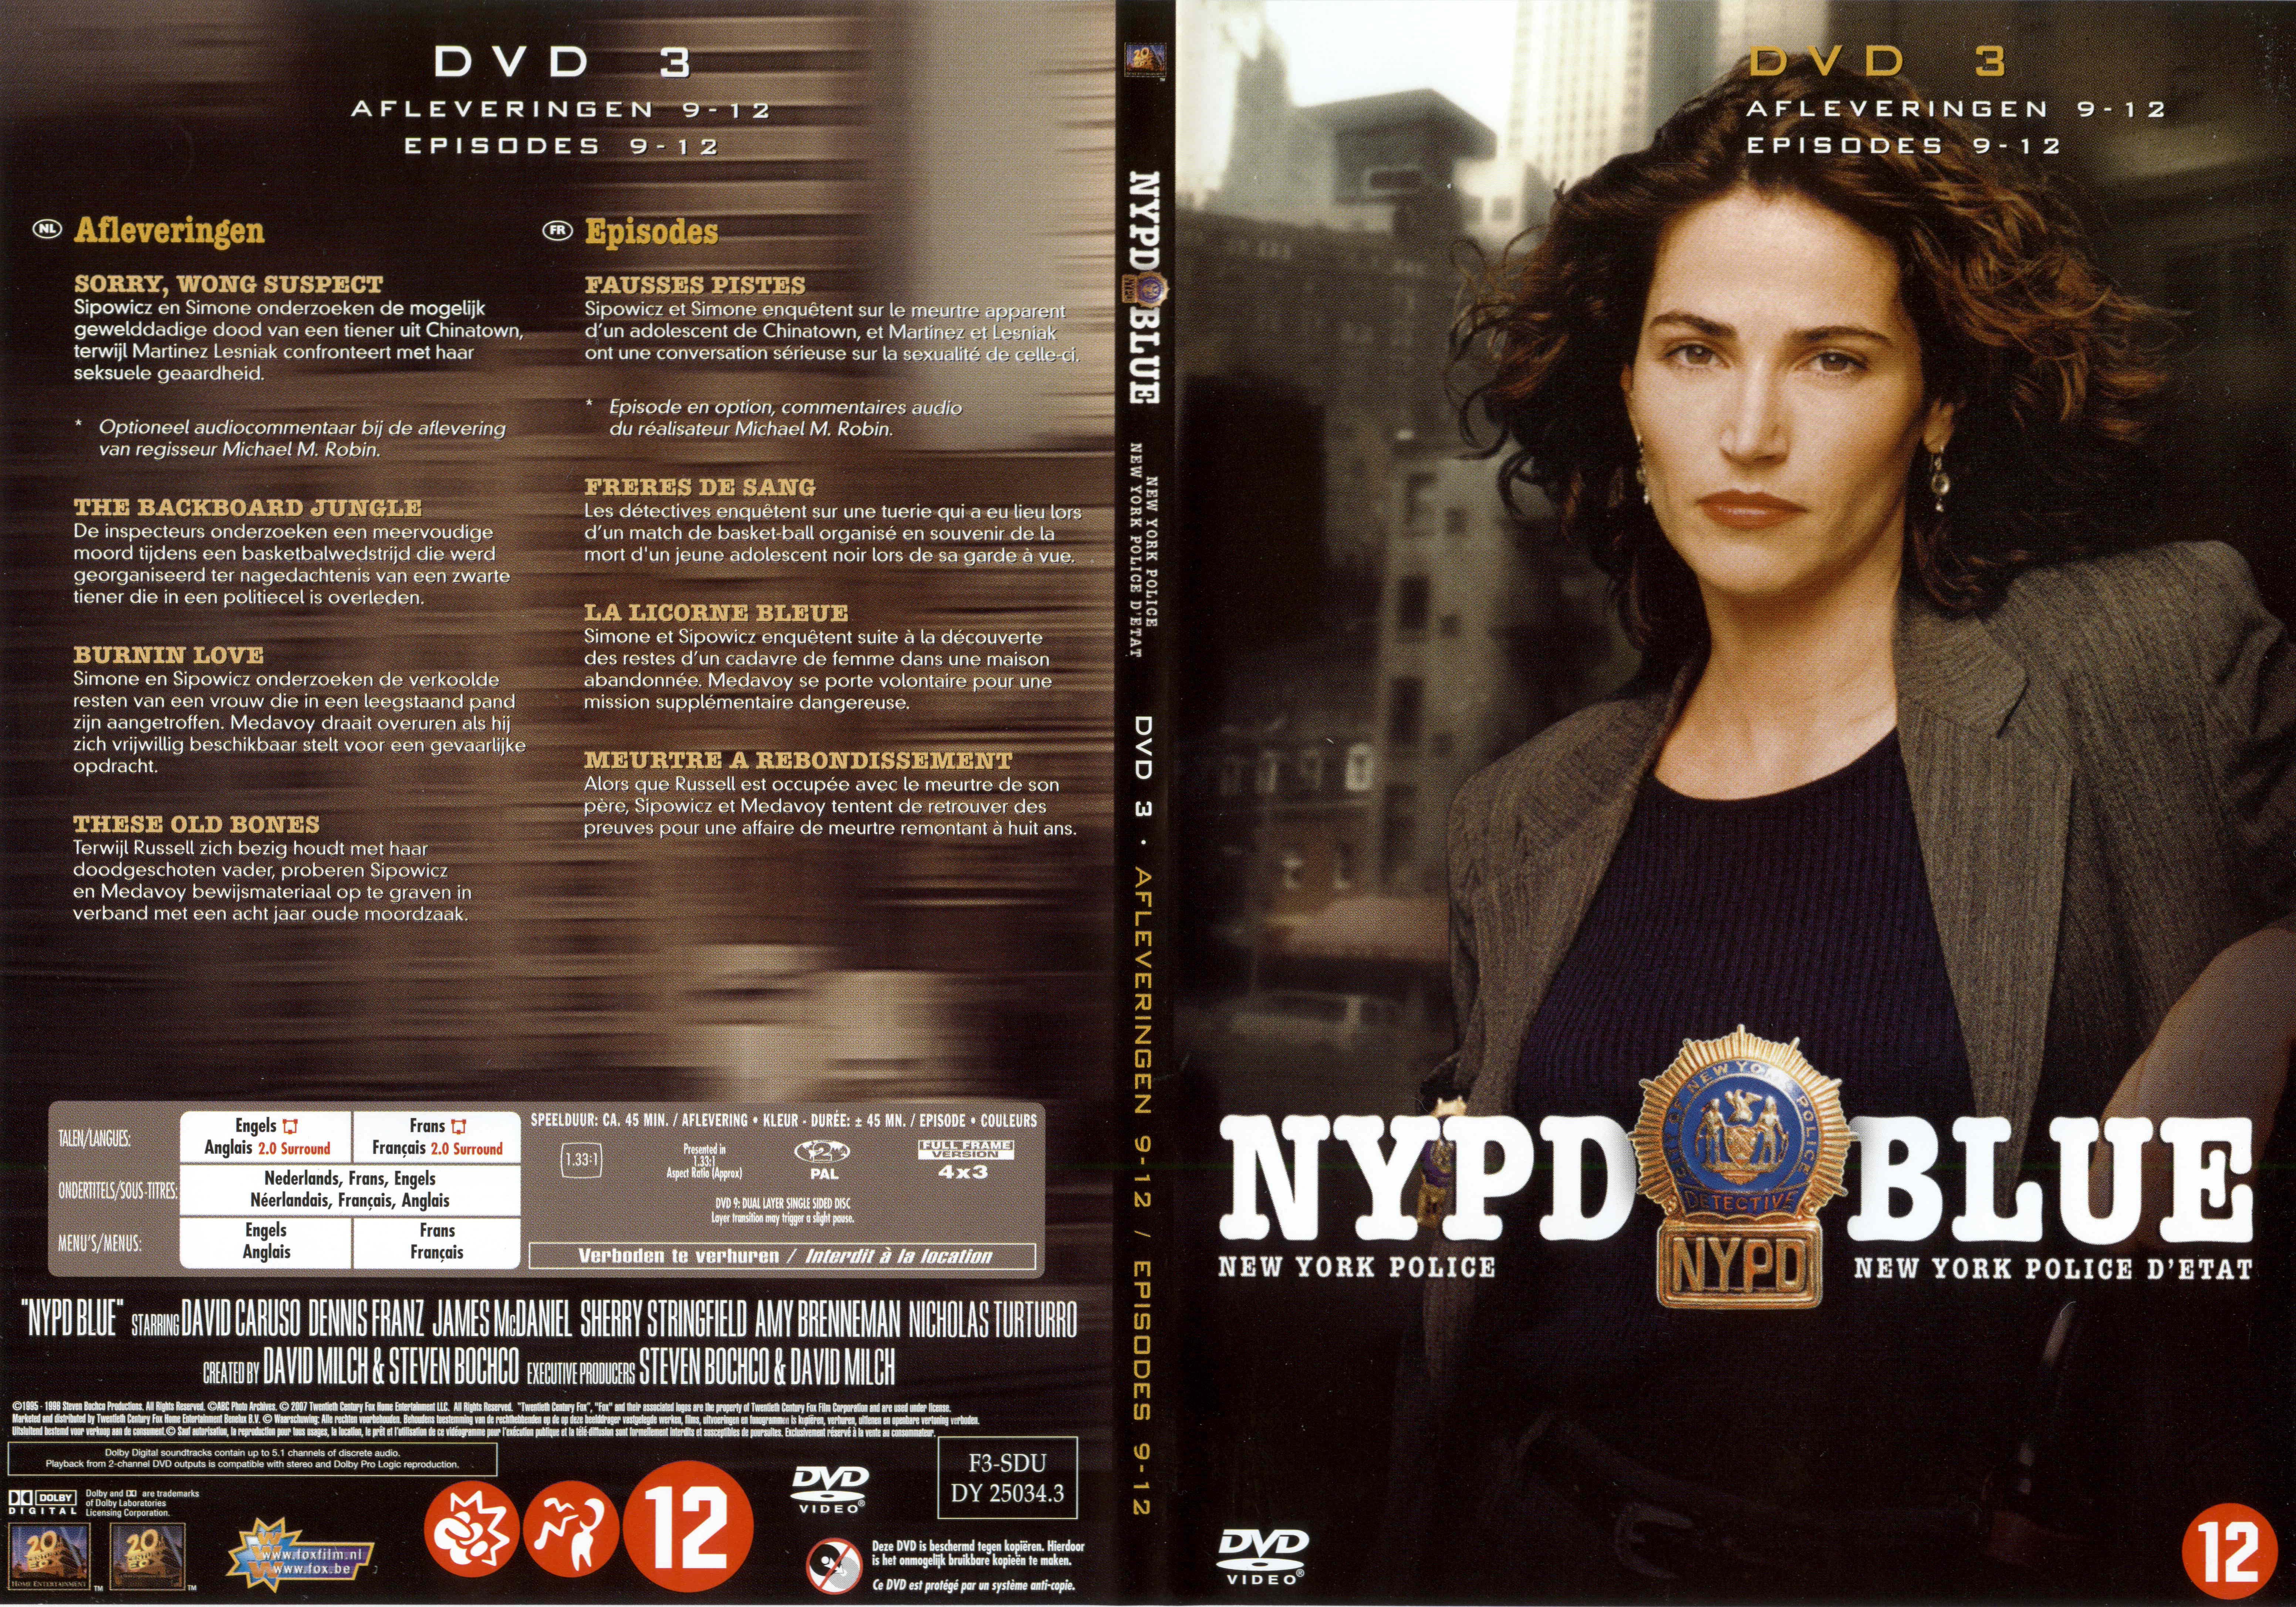 Jaquette DVD NYPD Blue saison 03 dvd 03